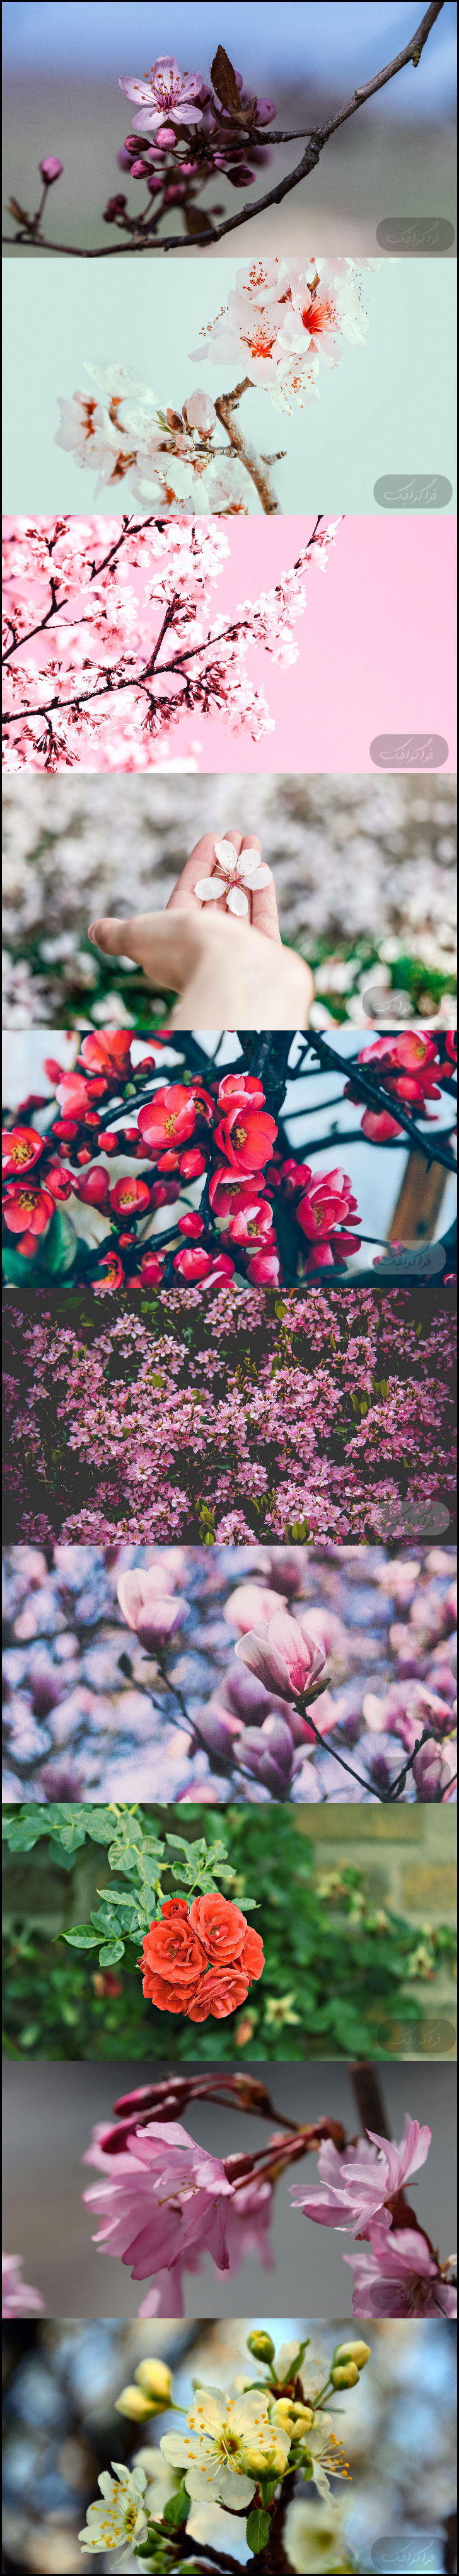 دانلود والپیپر های شکوفه کیفیت 4K - شماره 2